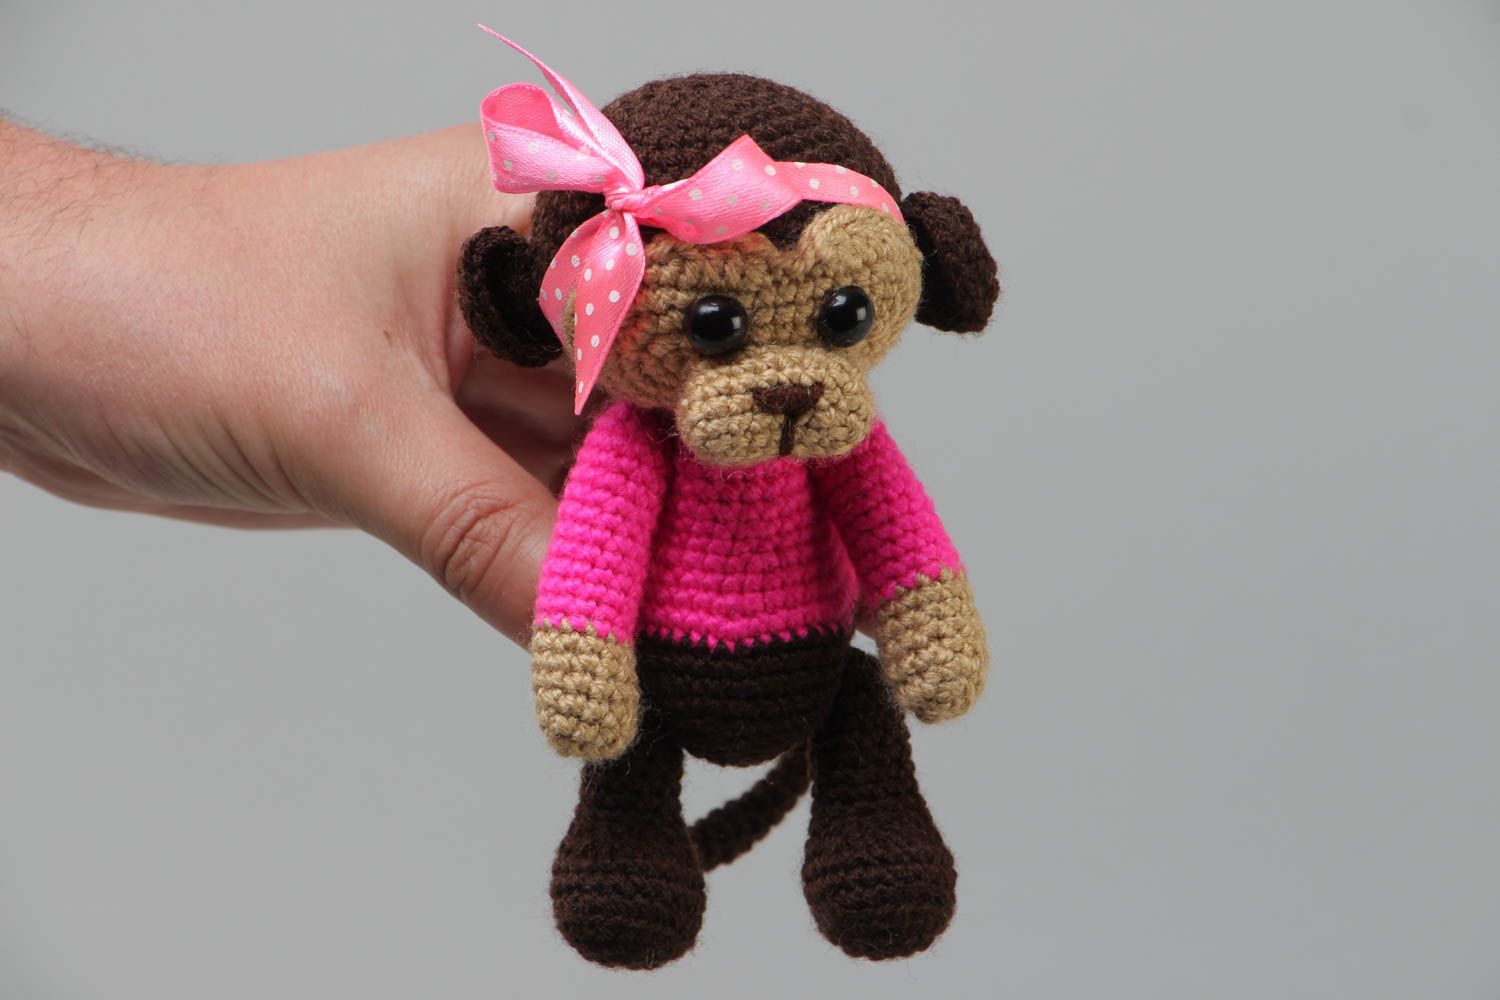 Маленькая мягкая вязаная игрушка обезьянка в розовом крючком из акрила хэнд мэйд фото 5